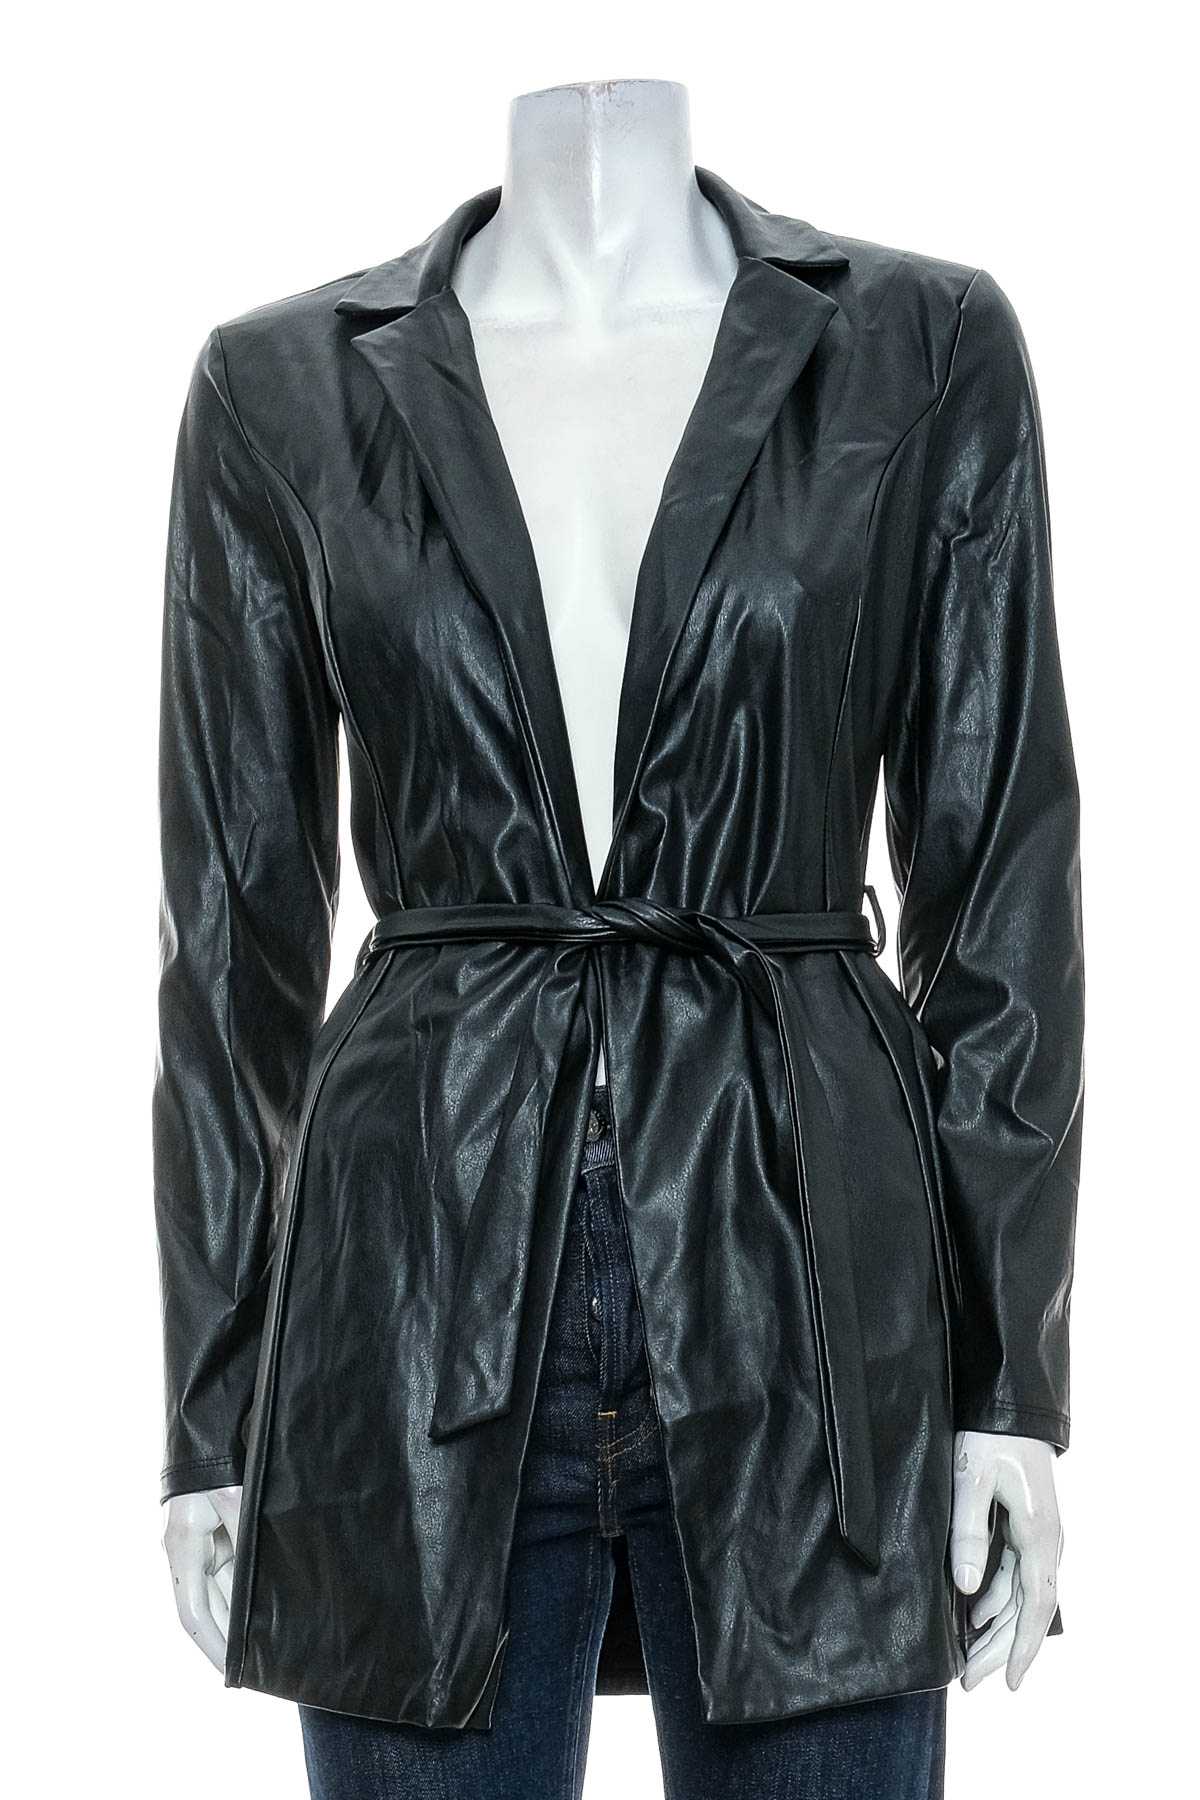 Women's leather blazer - FLOUNCE CLUB - 0